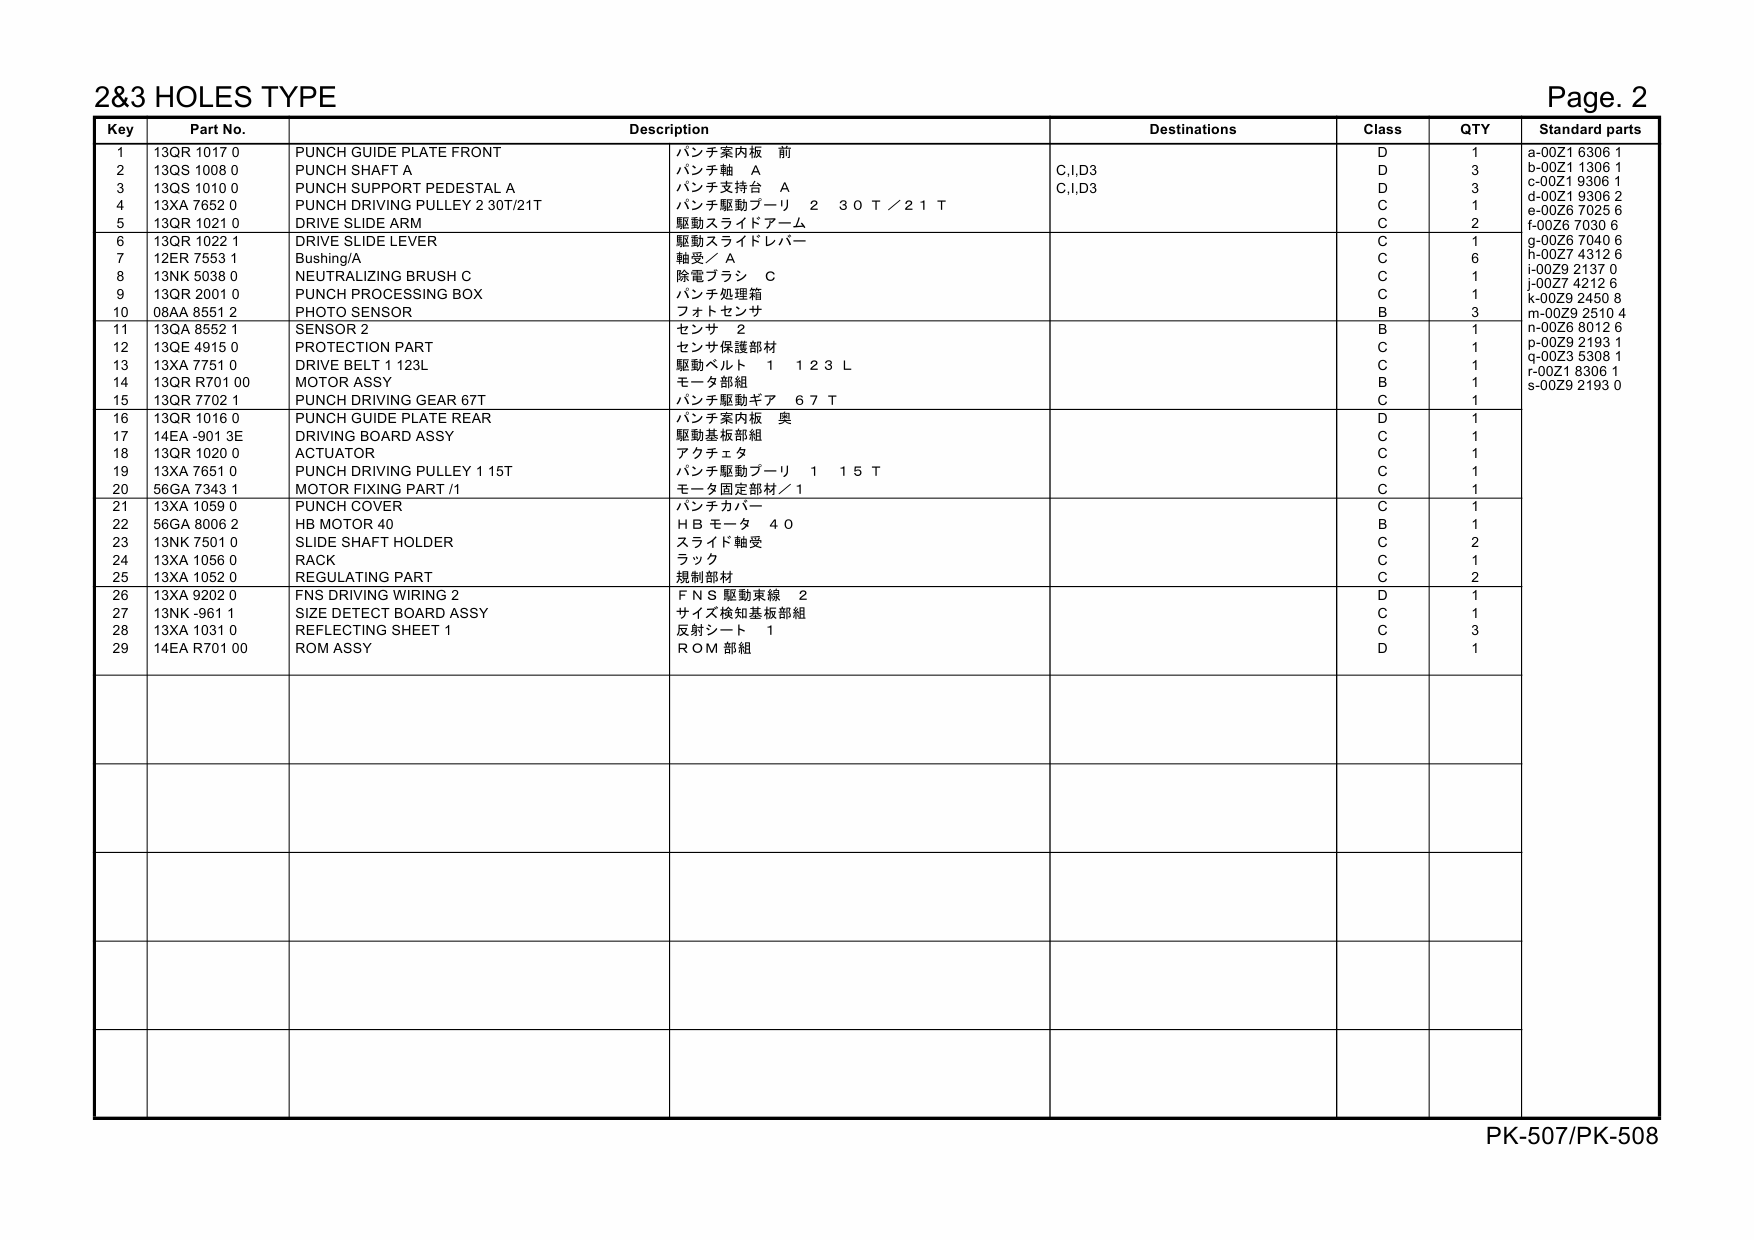 Konica-Minolta Options PK-507 508 20GH Parts Manual-6